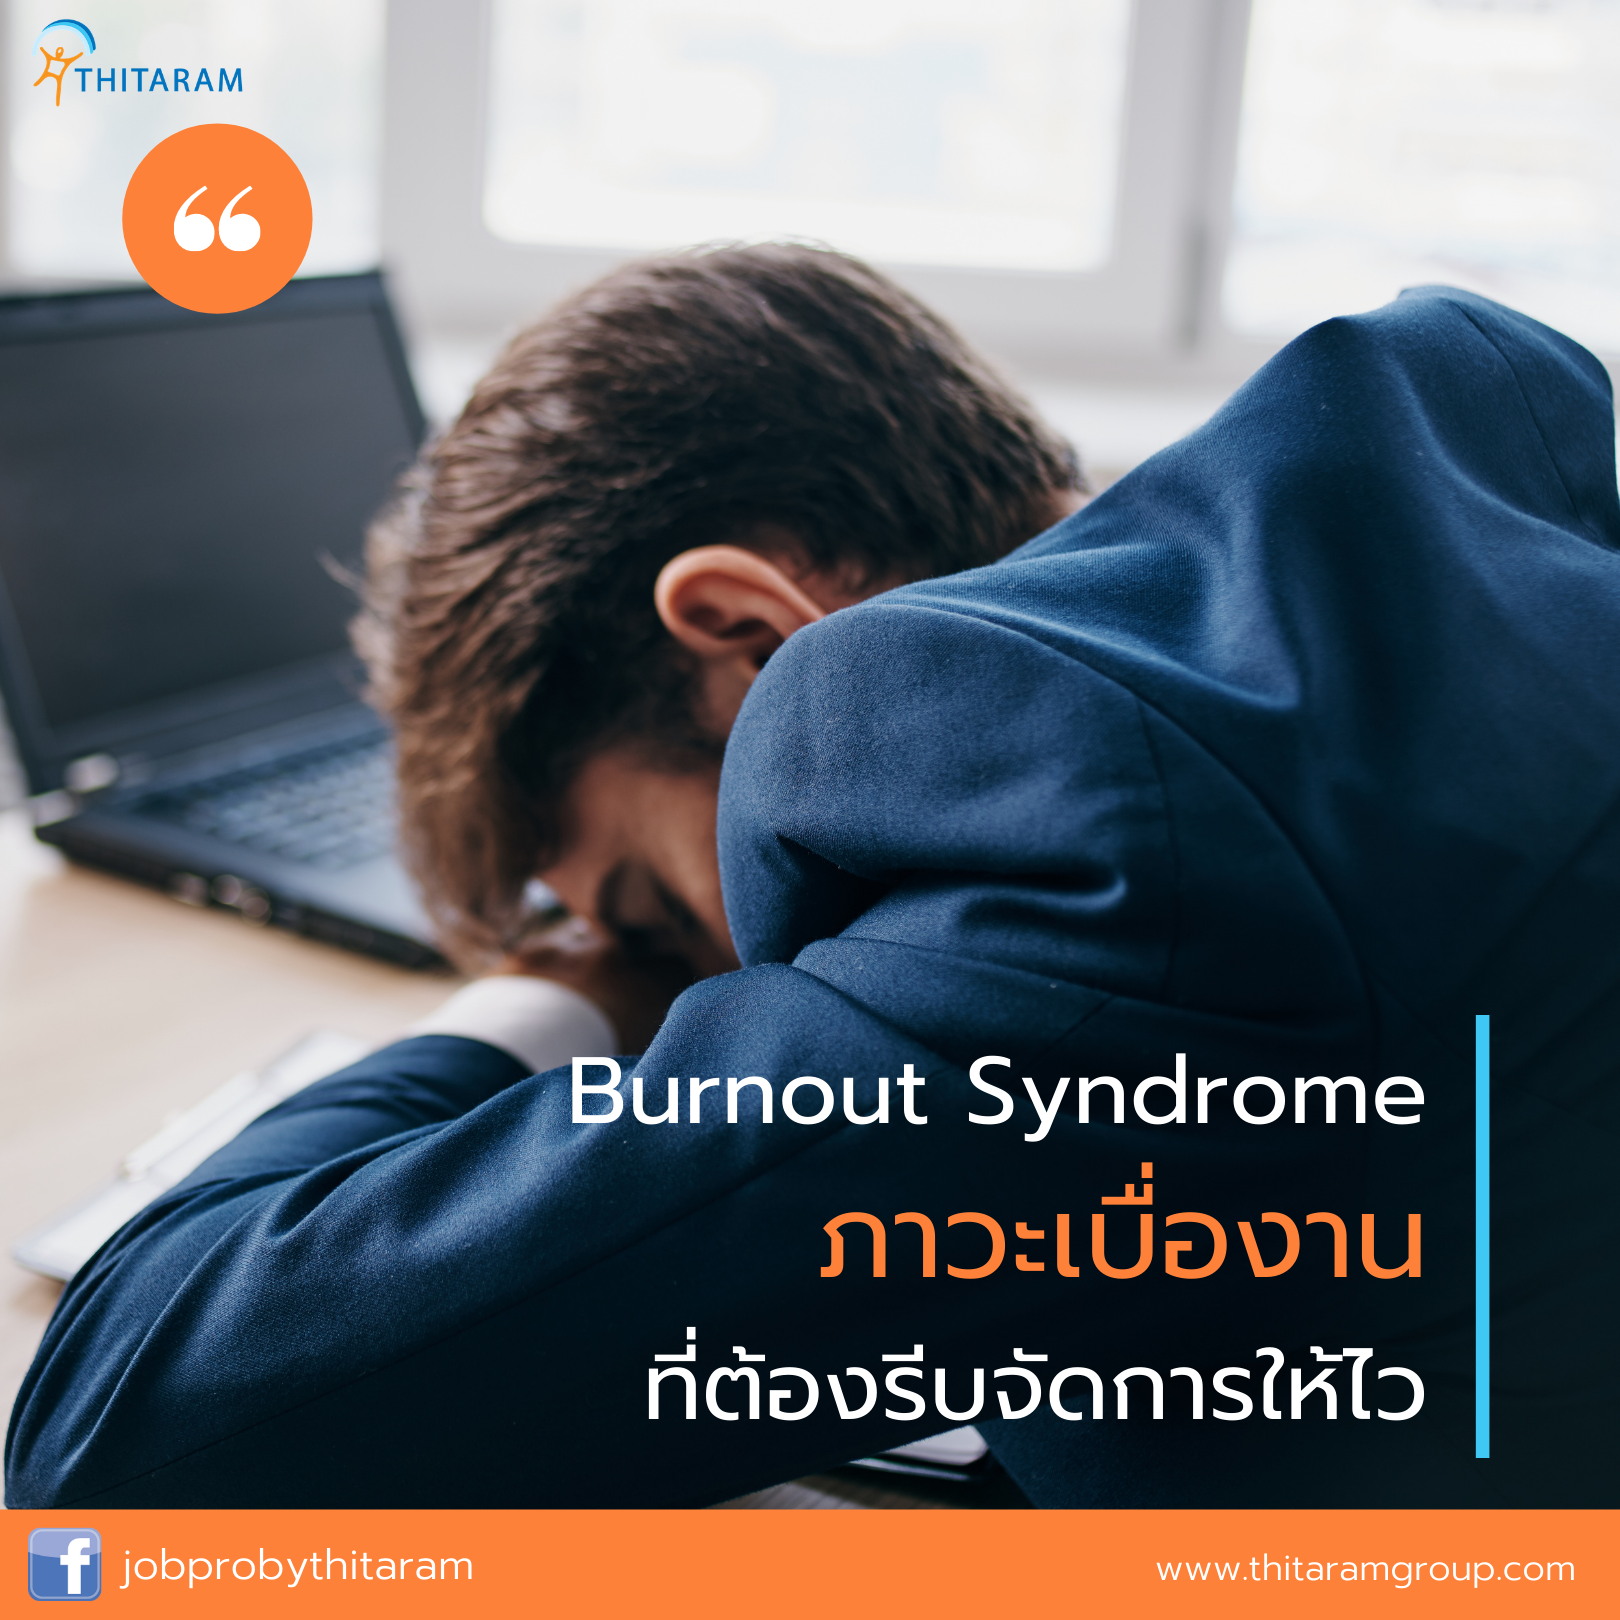 วิธีแก้อาการ Burnout Syndrome ภาวะเบื่องานที่ต้องรีบจัดการ